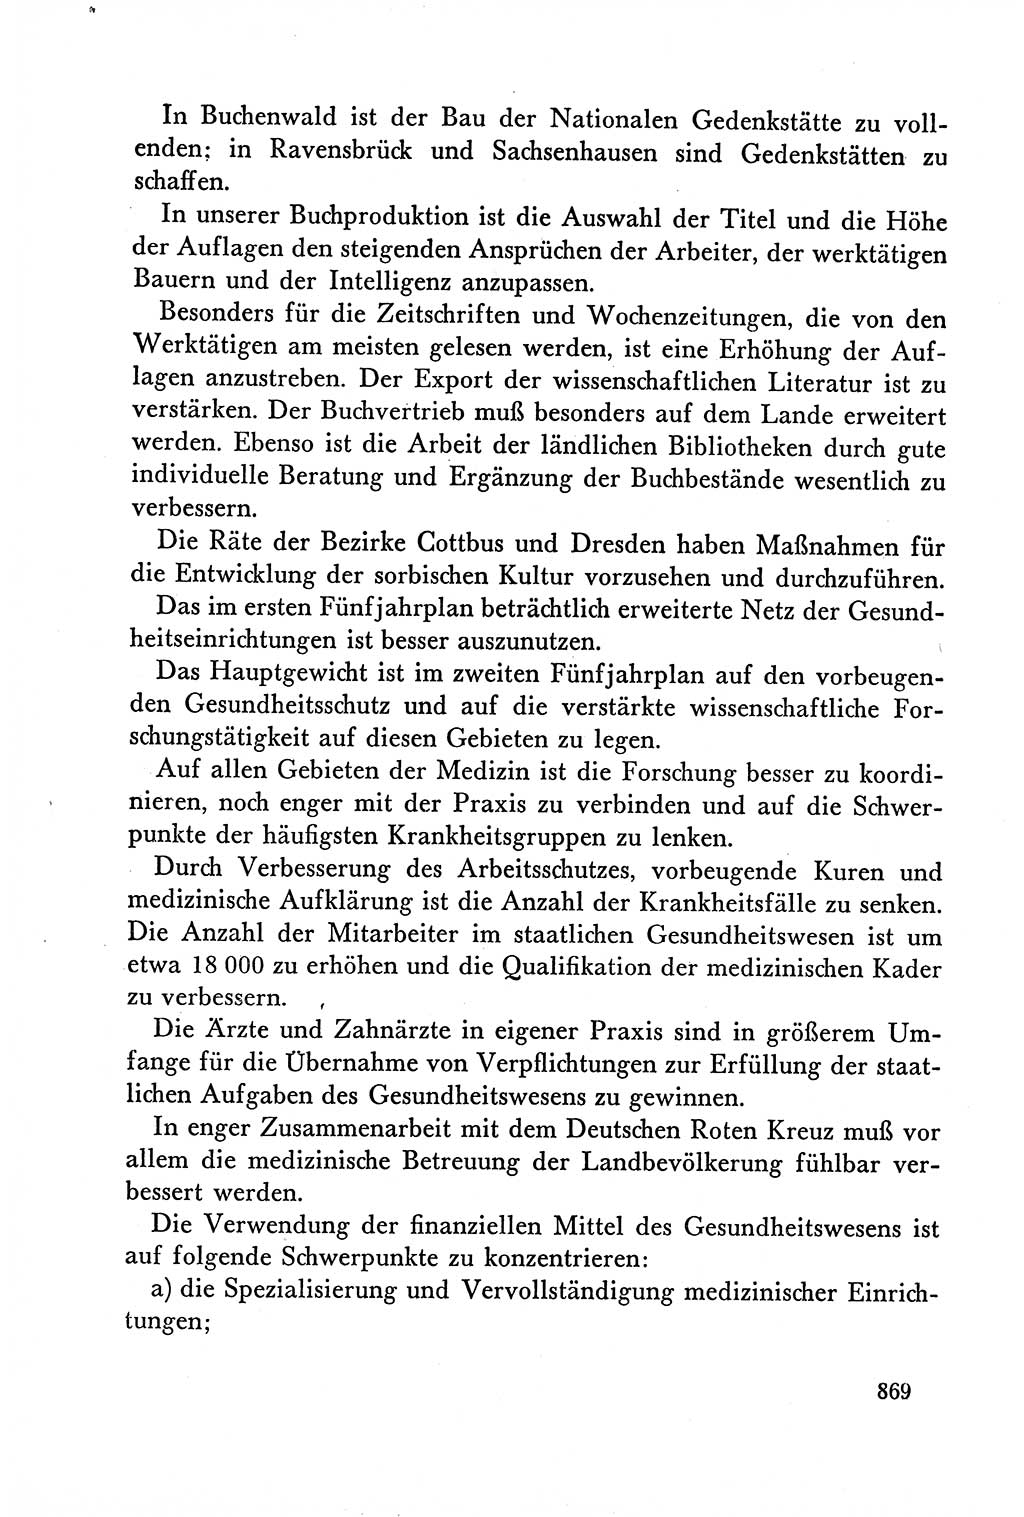 Dokumente der Sozialistischen Einheitspartei Deutschlands (SED) [Deutsche Demokratische Republik (DDR)] 1958-1959, Seite 869 (Dok. SED DDR 1958-1959, S. 869)